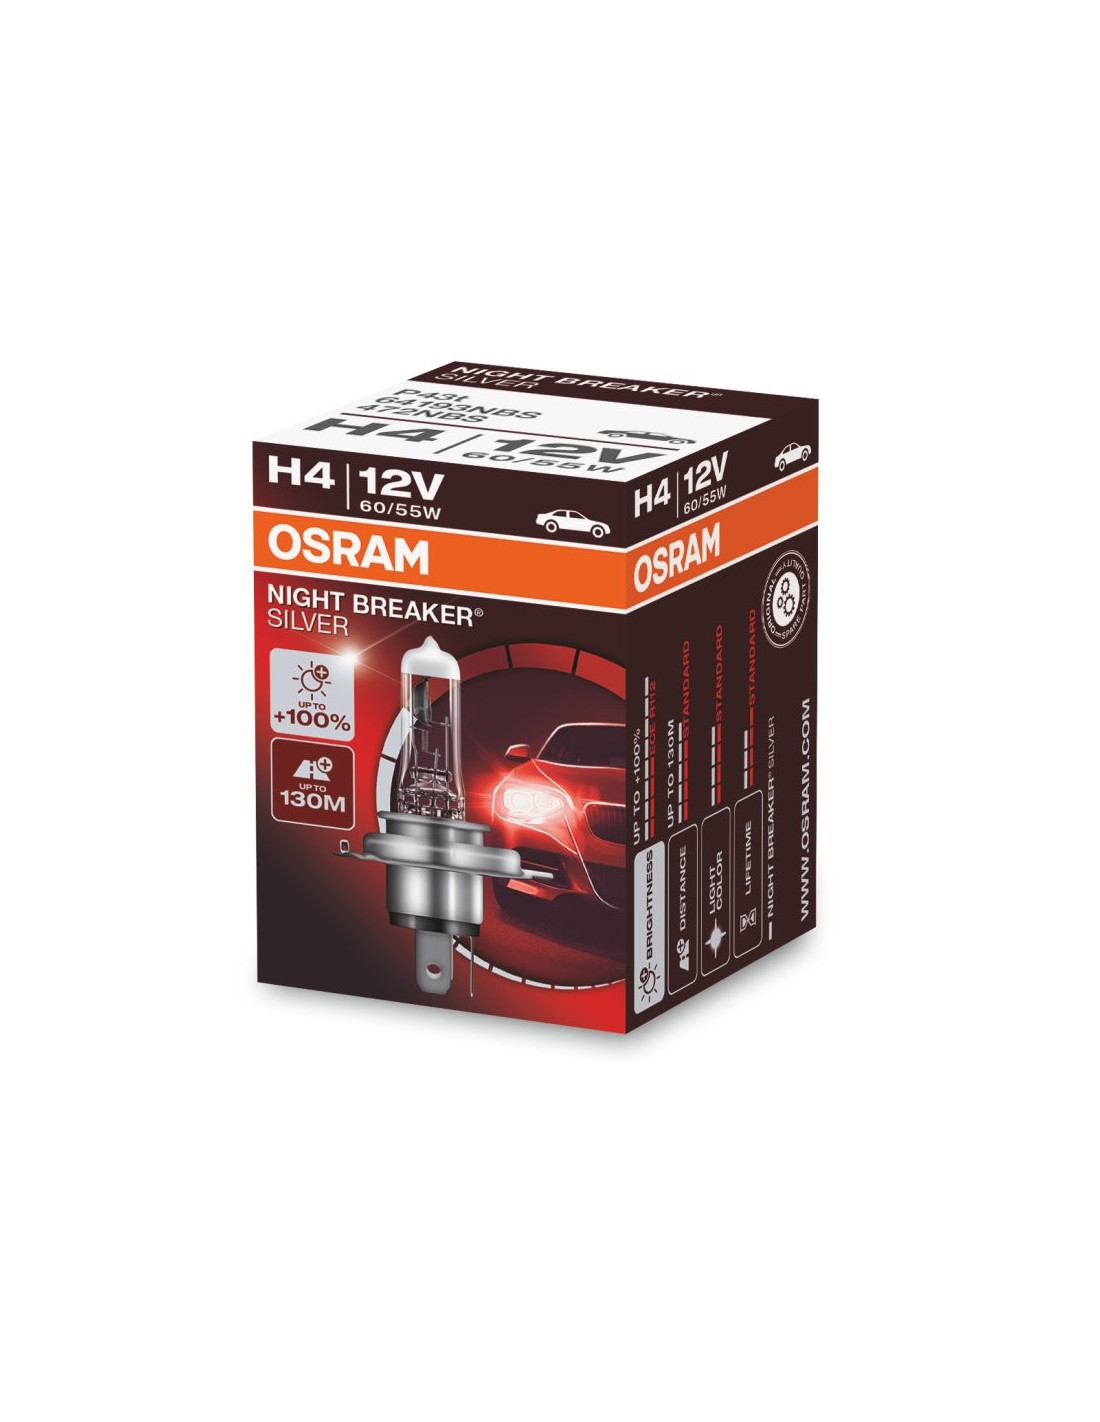 Midas Osram-Night-Breaker-Silver-Headlight-Fog-Spot-Bulb-12v-H4-60/55w-P43t